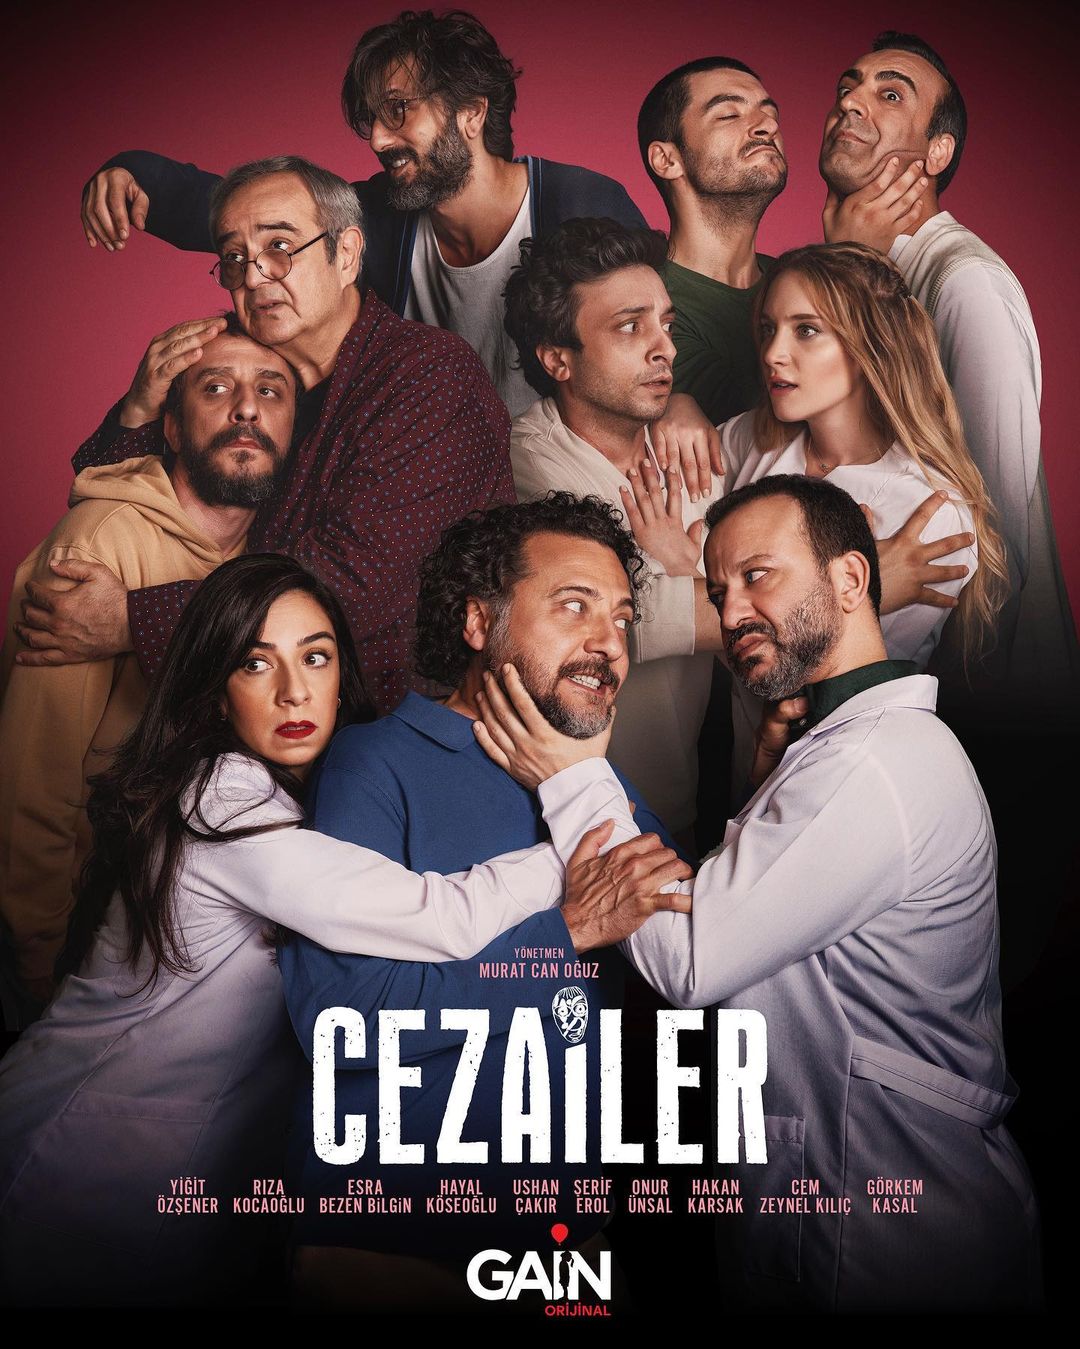 TV ratings for Cezailer in Norway. Gain TV series